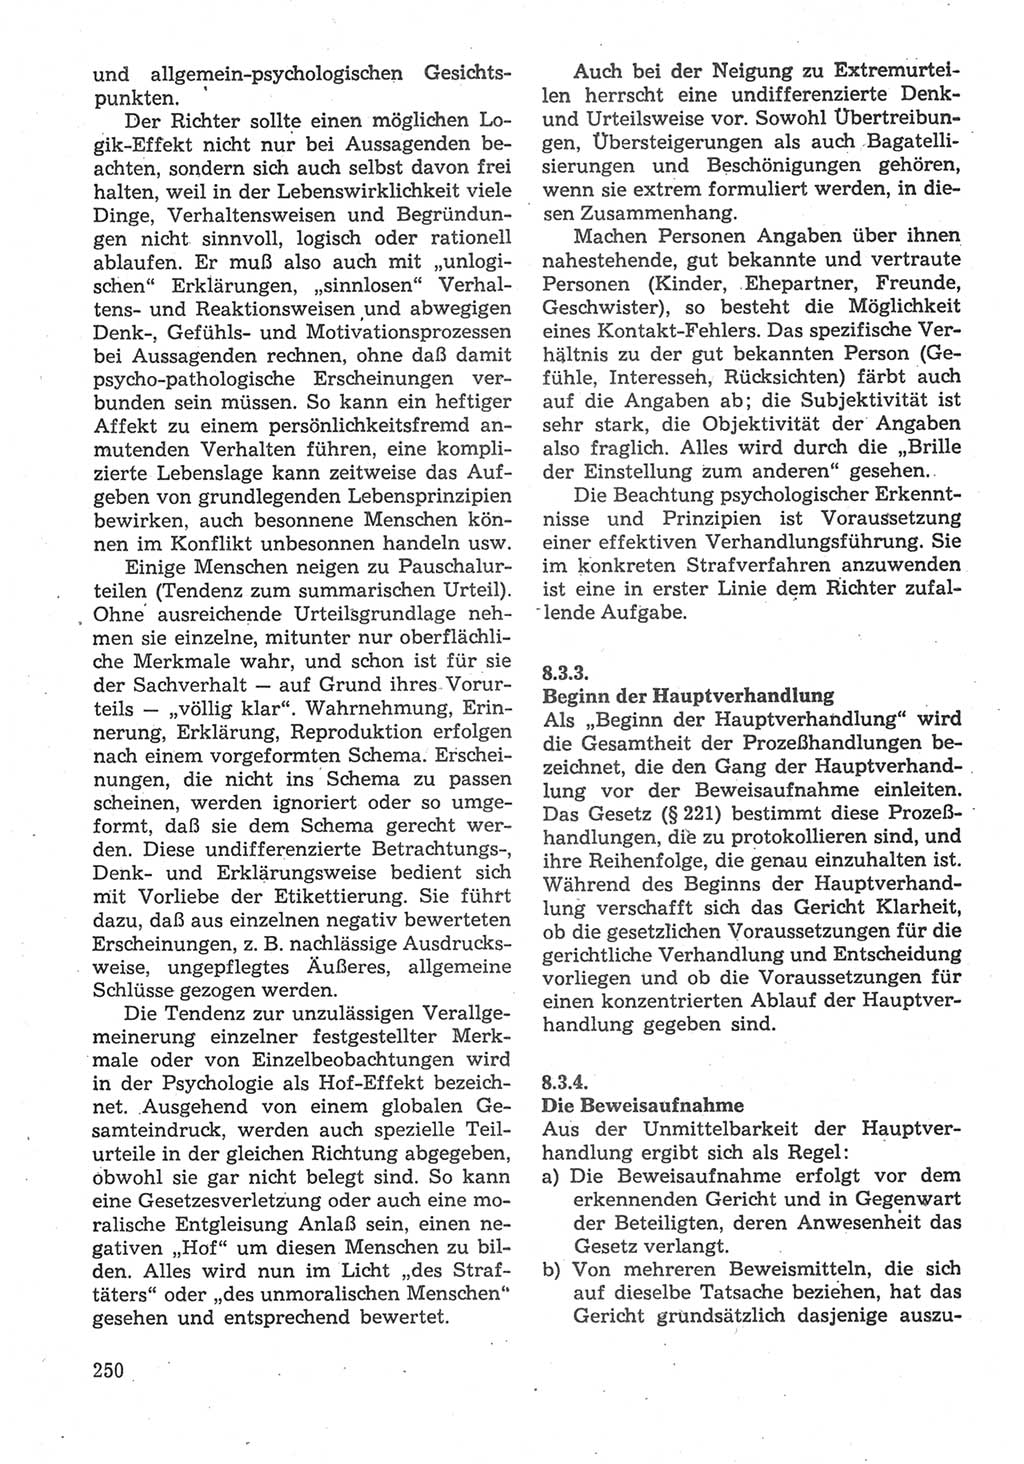 Strafverfahrensrecht [Deutsche Demokratische Republik (DDR)], Lehrbuch 1987, Seite 250 (Strafverf.-R. DDR Lb. 1987, S. 250)